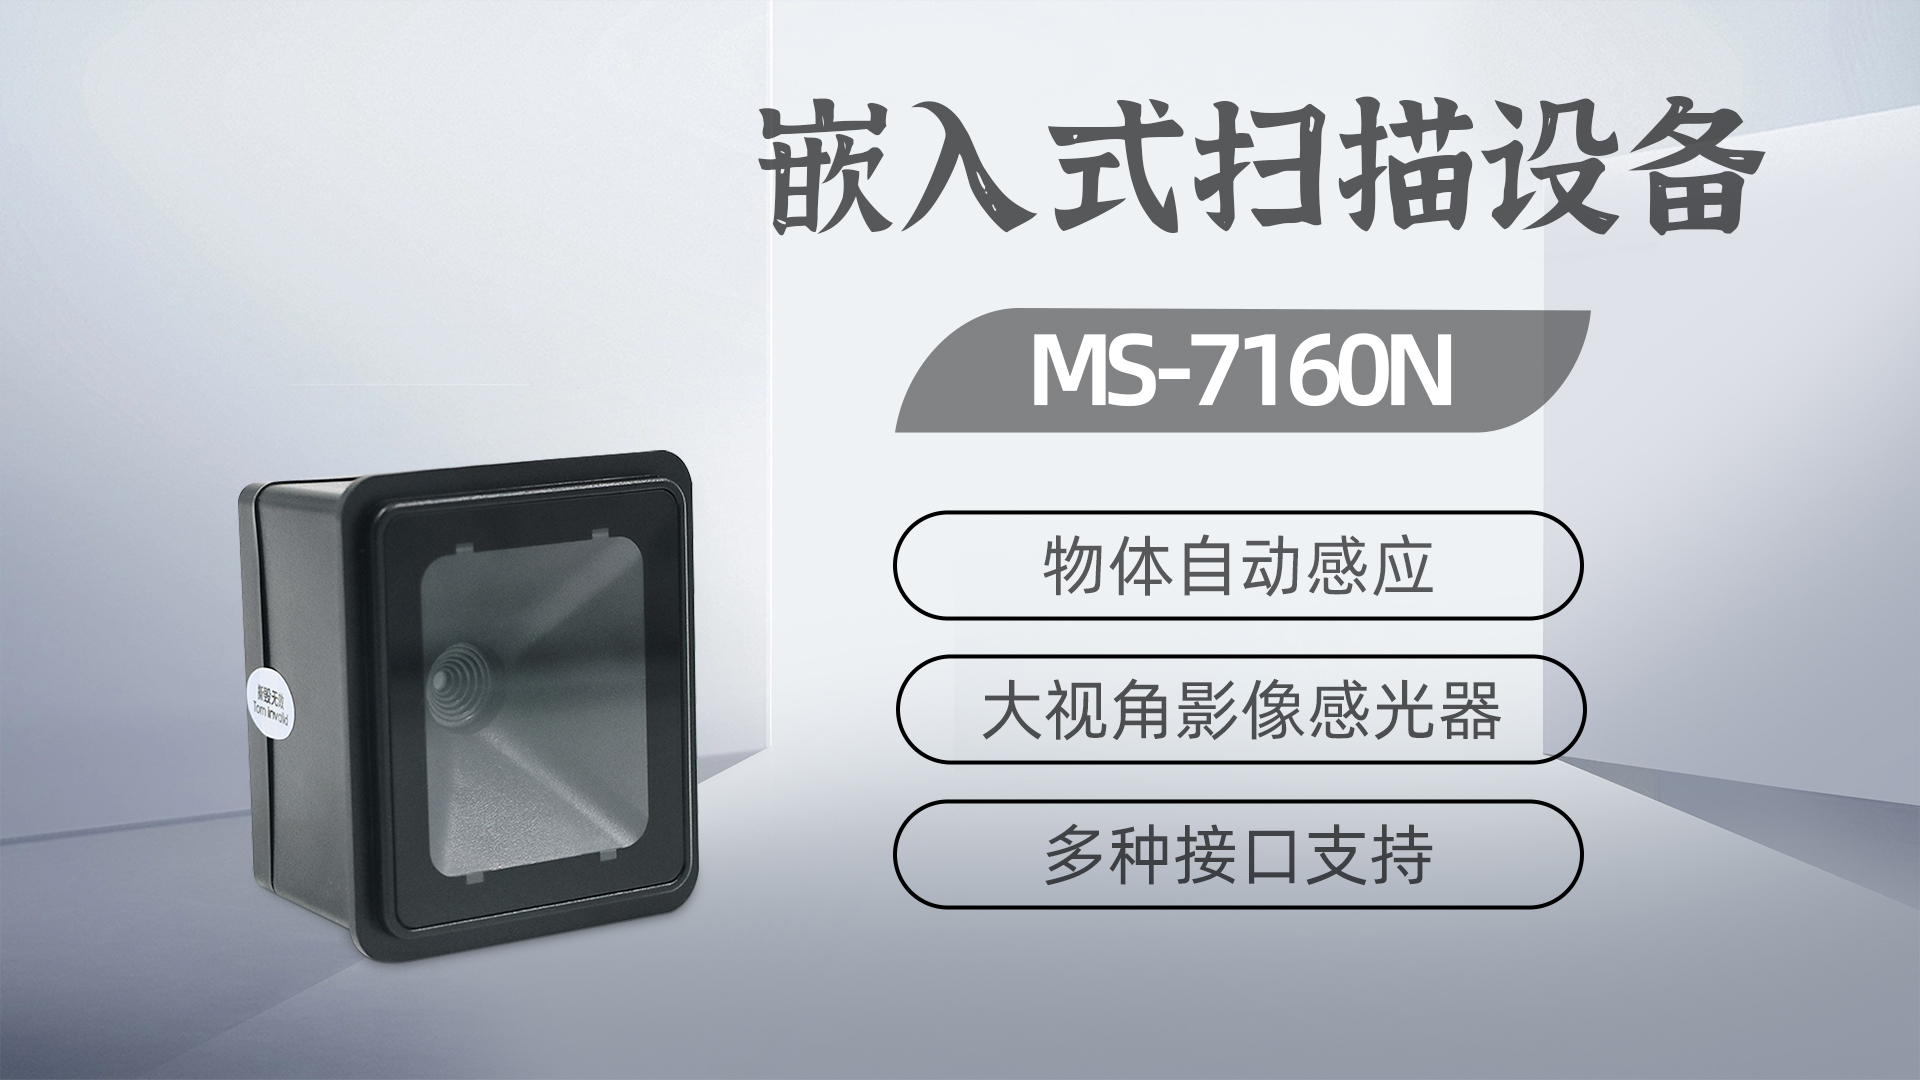 美松二维码扫描器MS-7160N为自助洗车缴费机提供解决方案